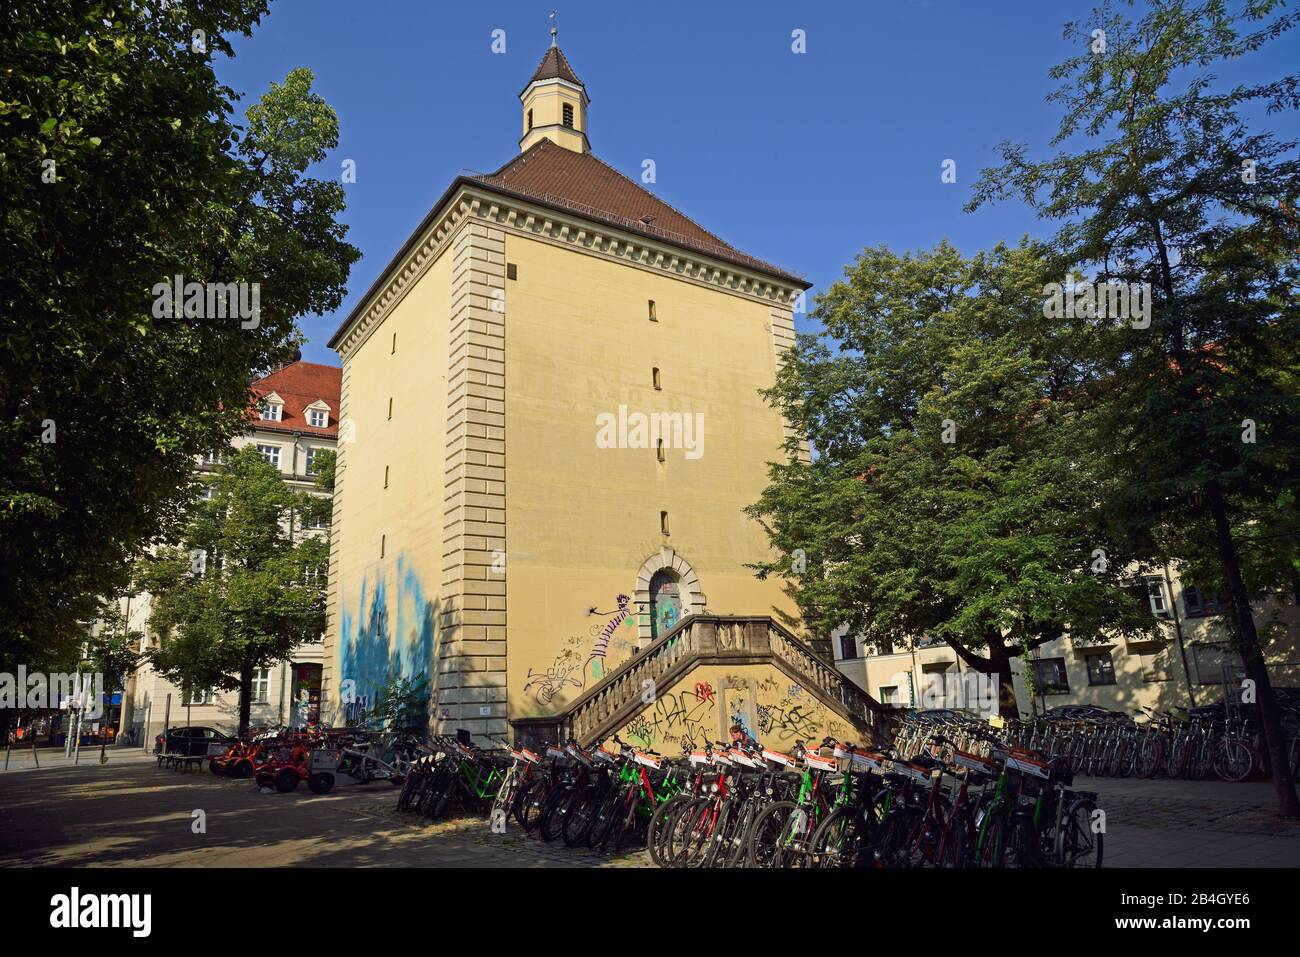 Europa, Germania, Baviera, Monaco, Città, bunker a Blumenstrasse, parcheggio per biciclette e scooter a noleggio, Foto Stock